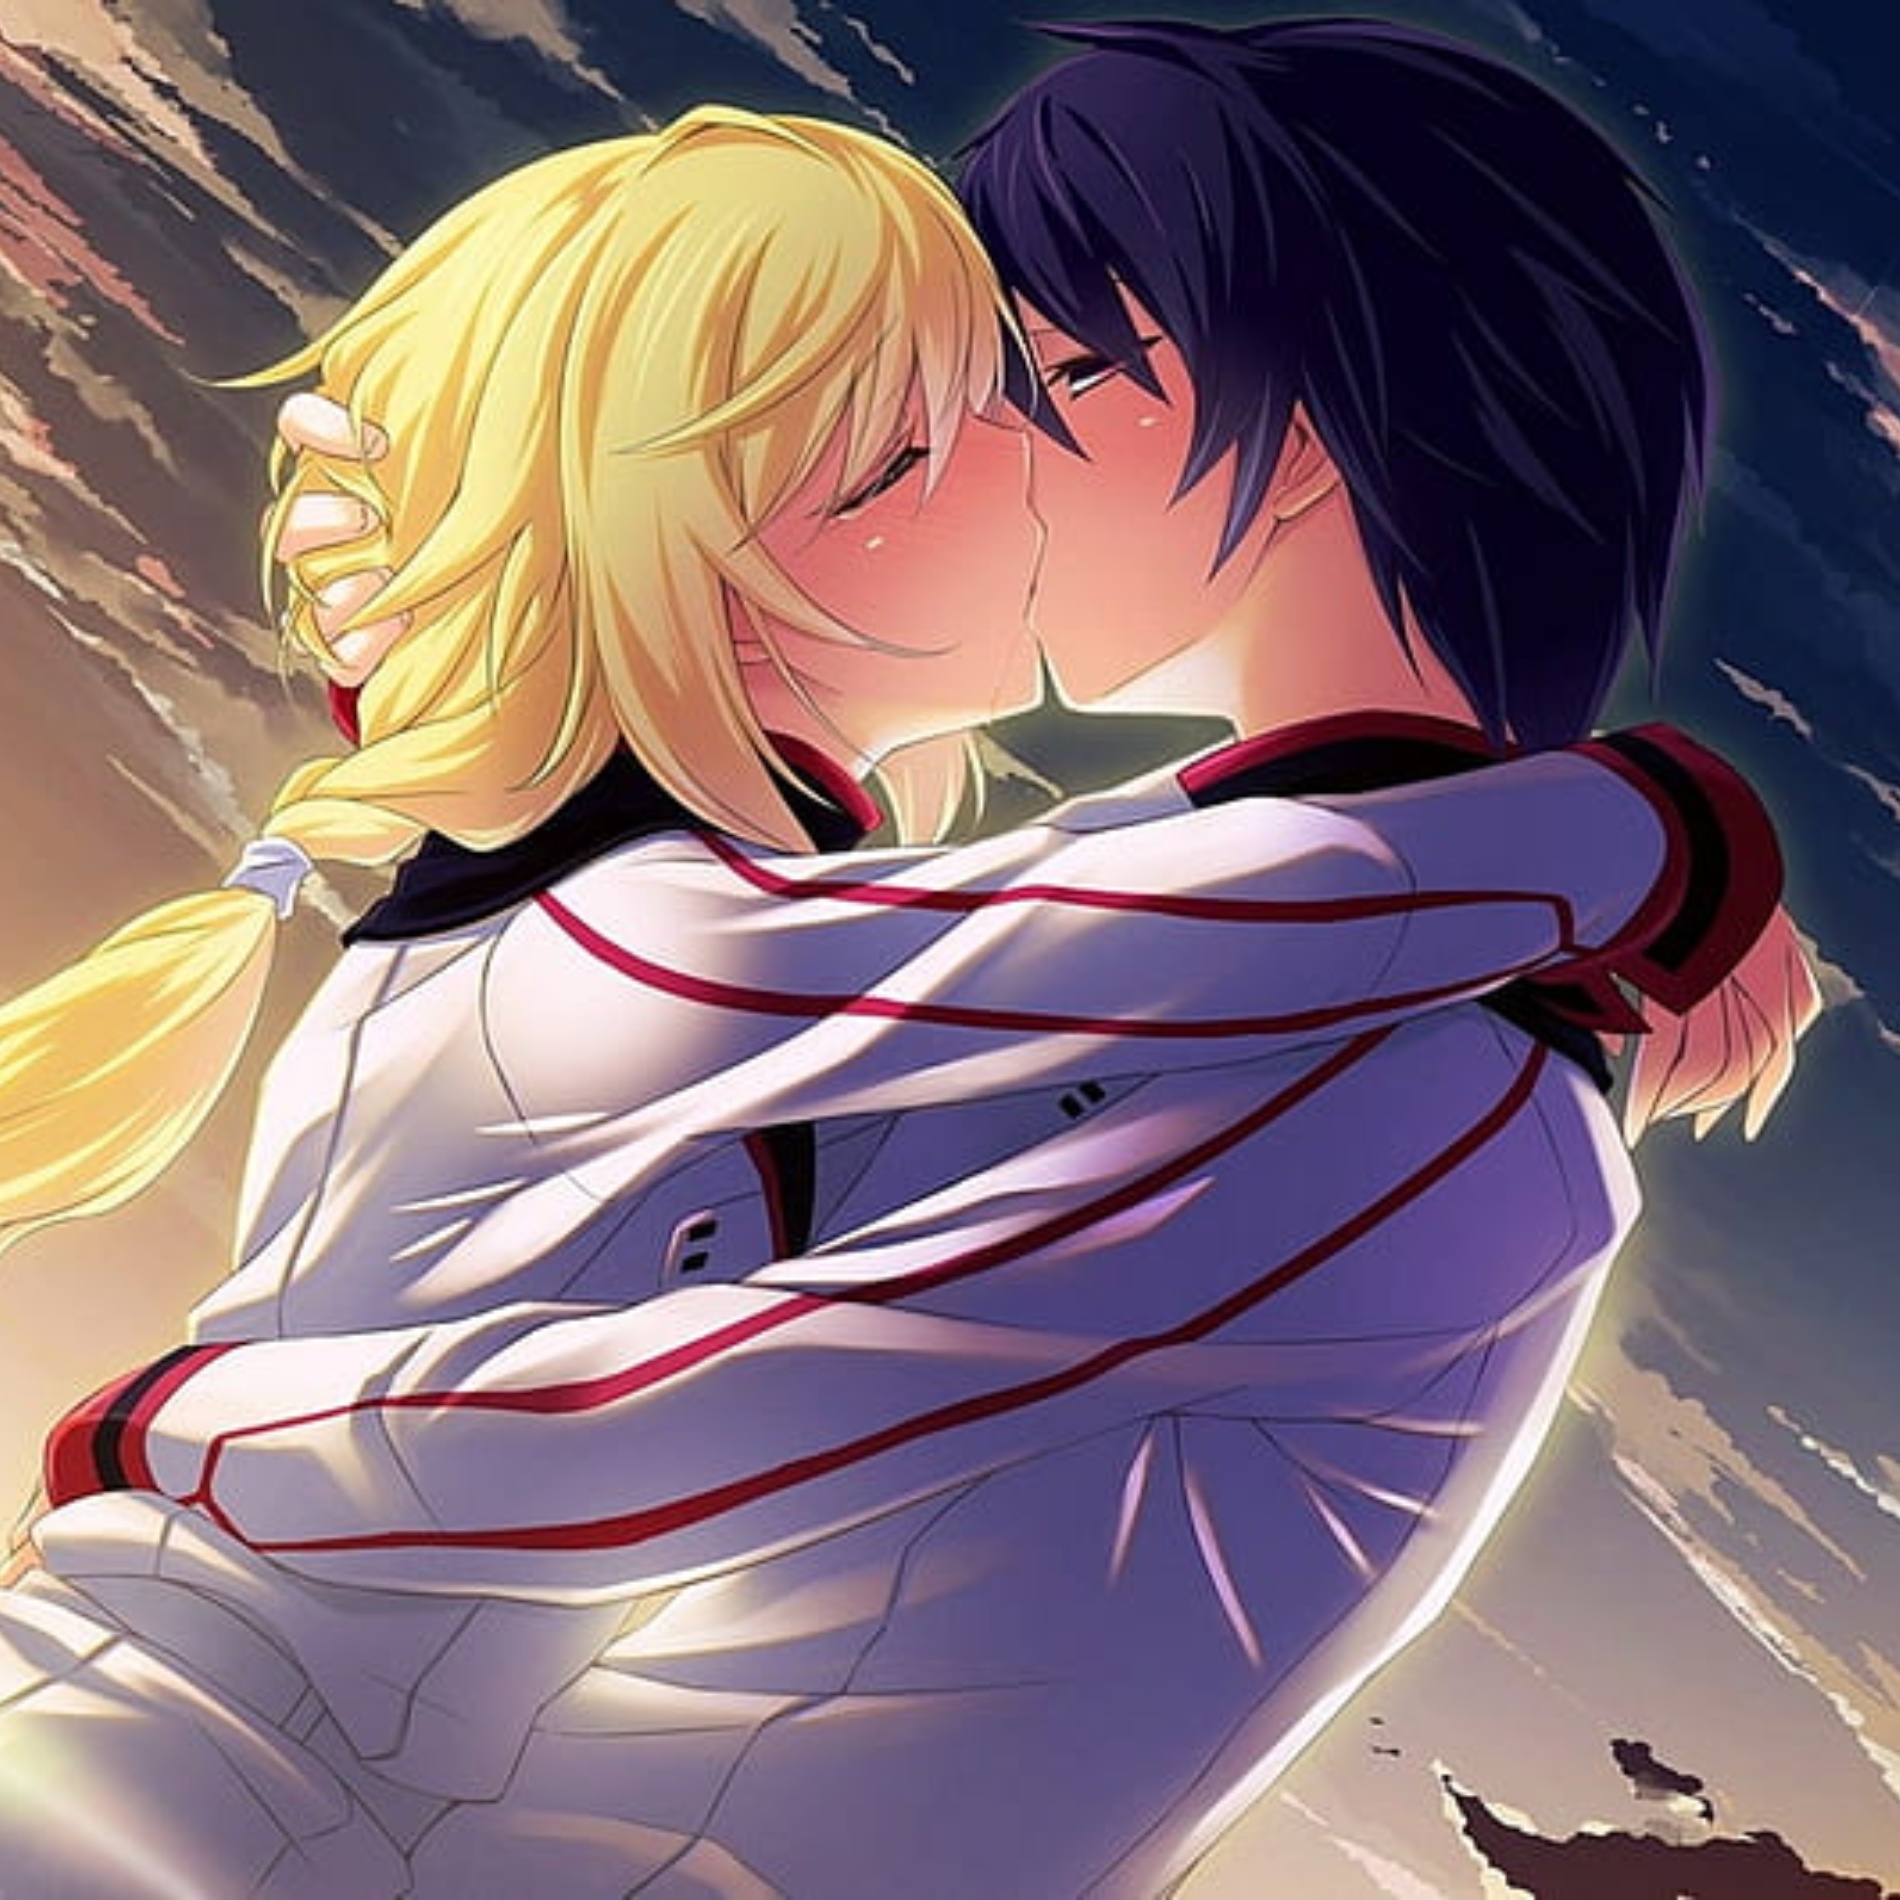 Pfp Anime Boy and Girl kiss